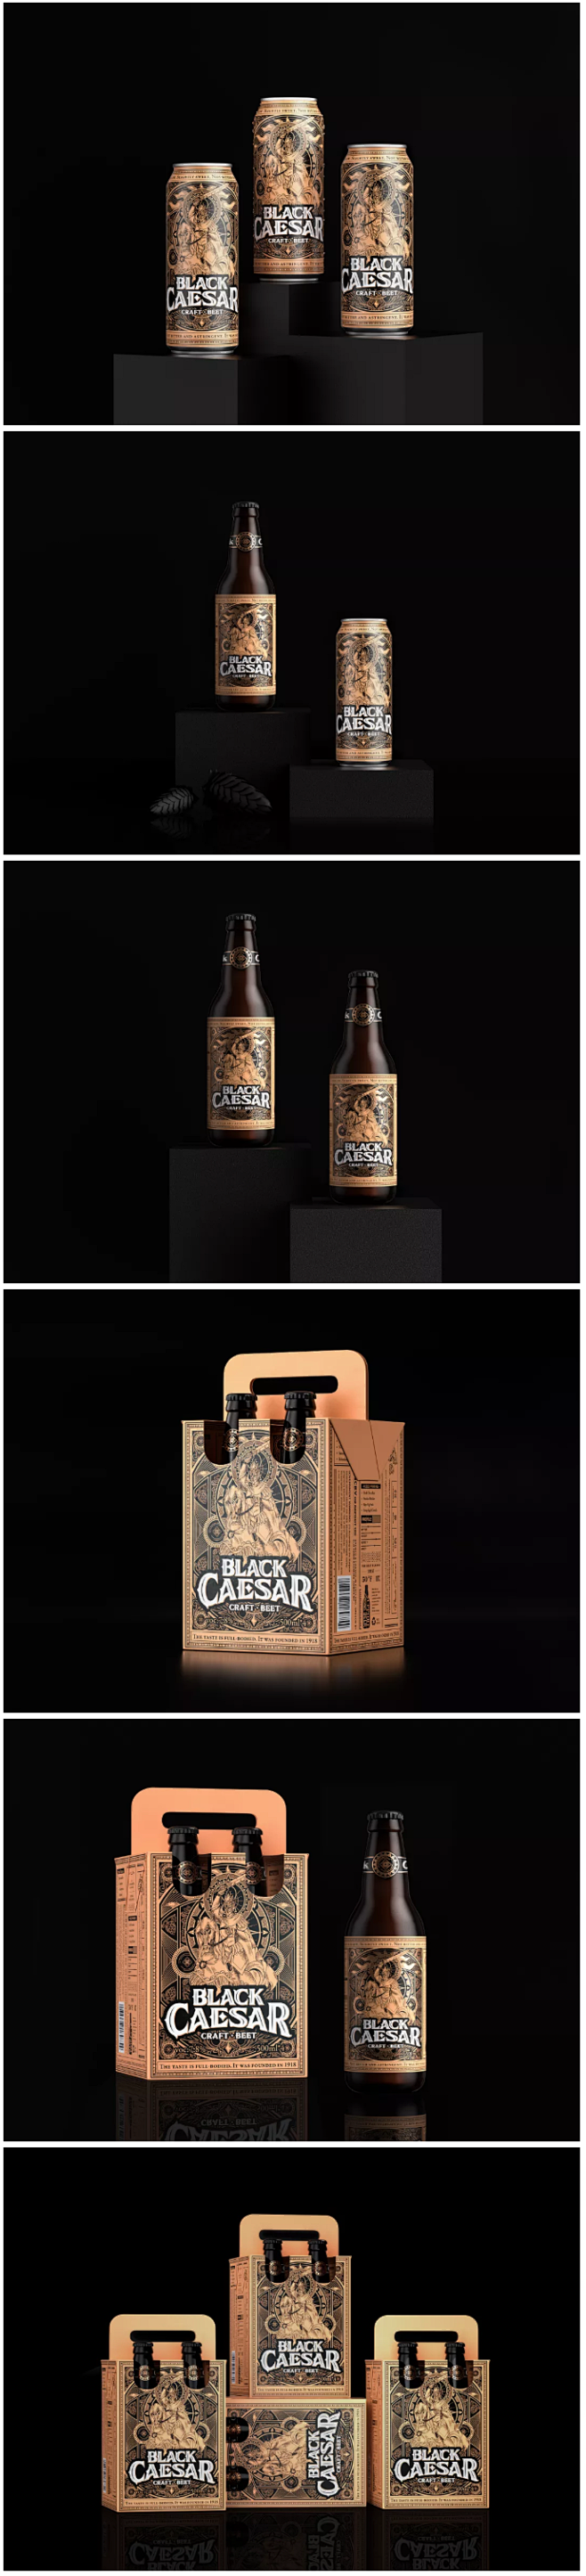 啤酒的包装设计，也可以这么酷！
——
炫...